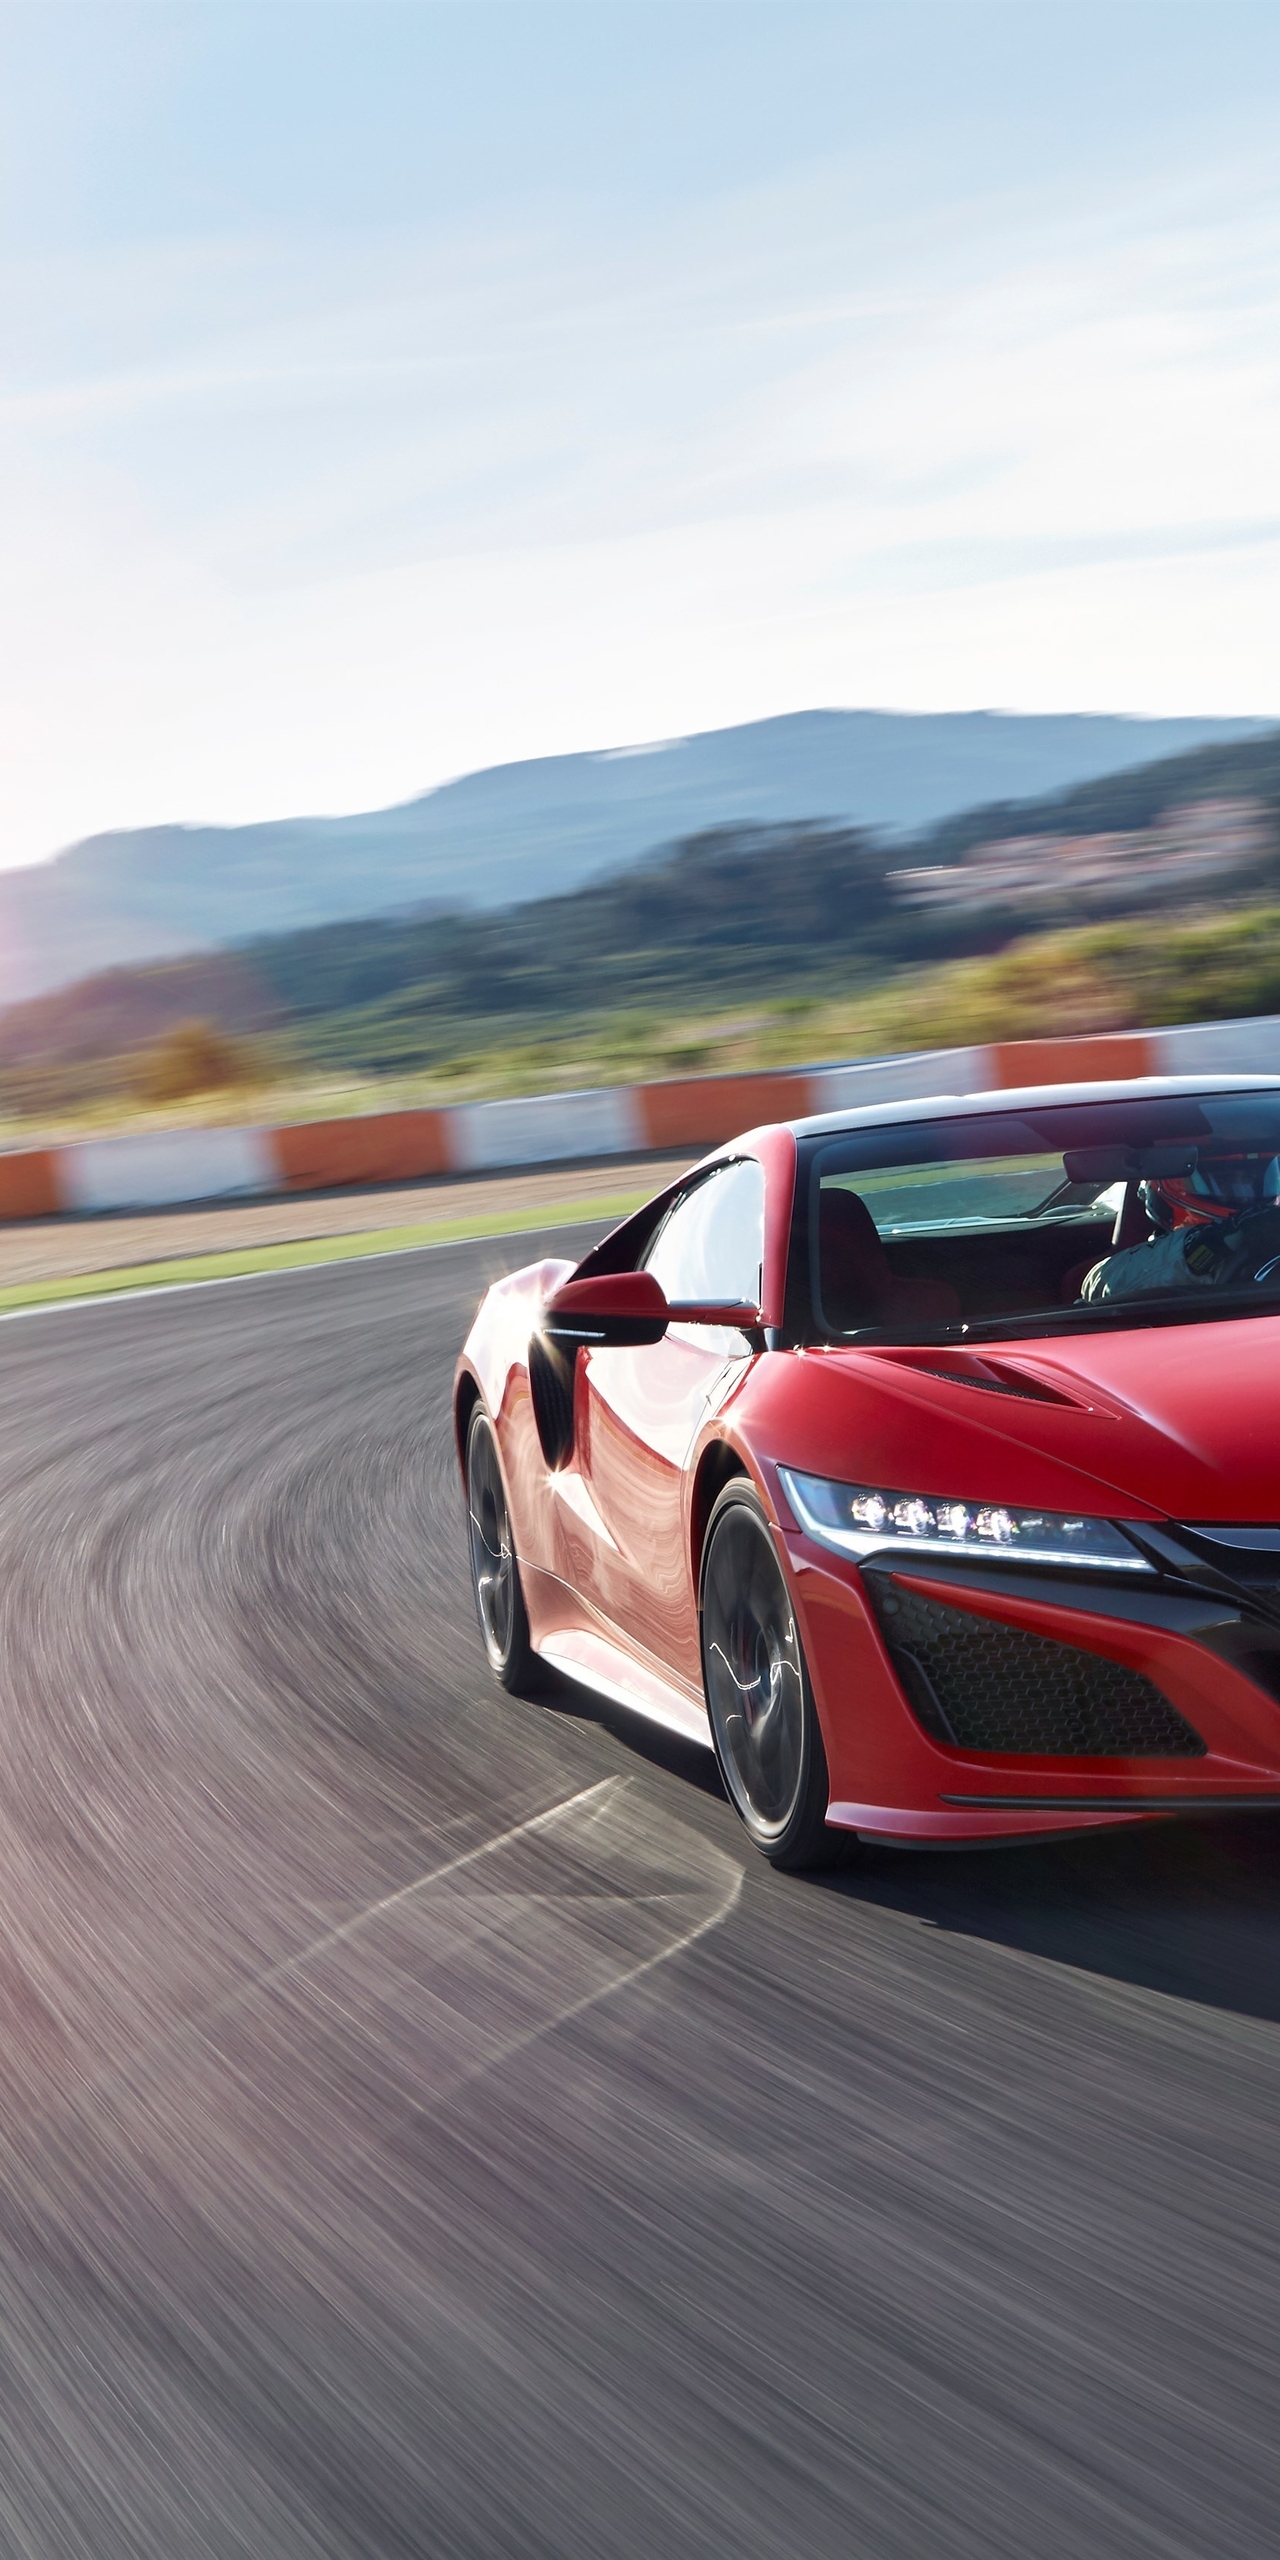 Картинка: Honda NSX, Red, красный, спортивный, автомобиль, трасса, дорога, асфальт, скорость